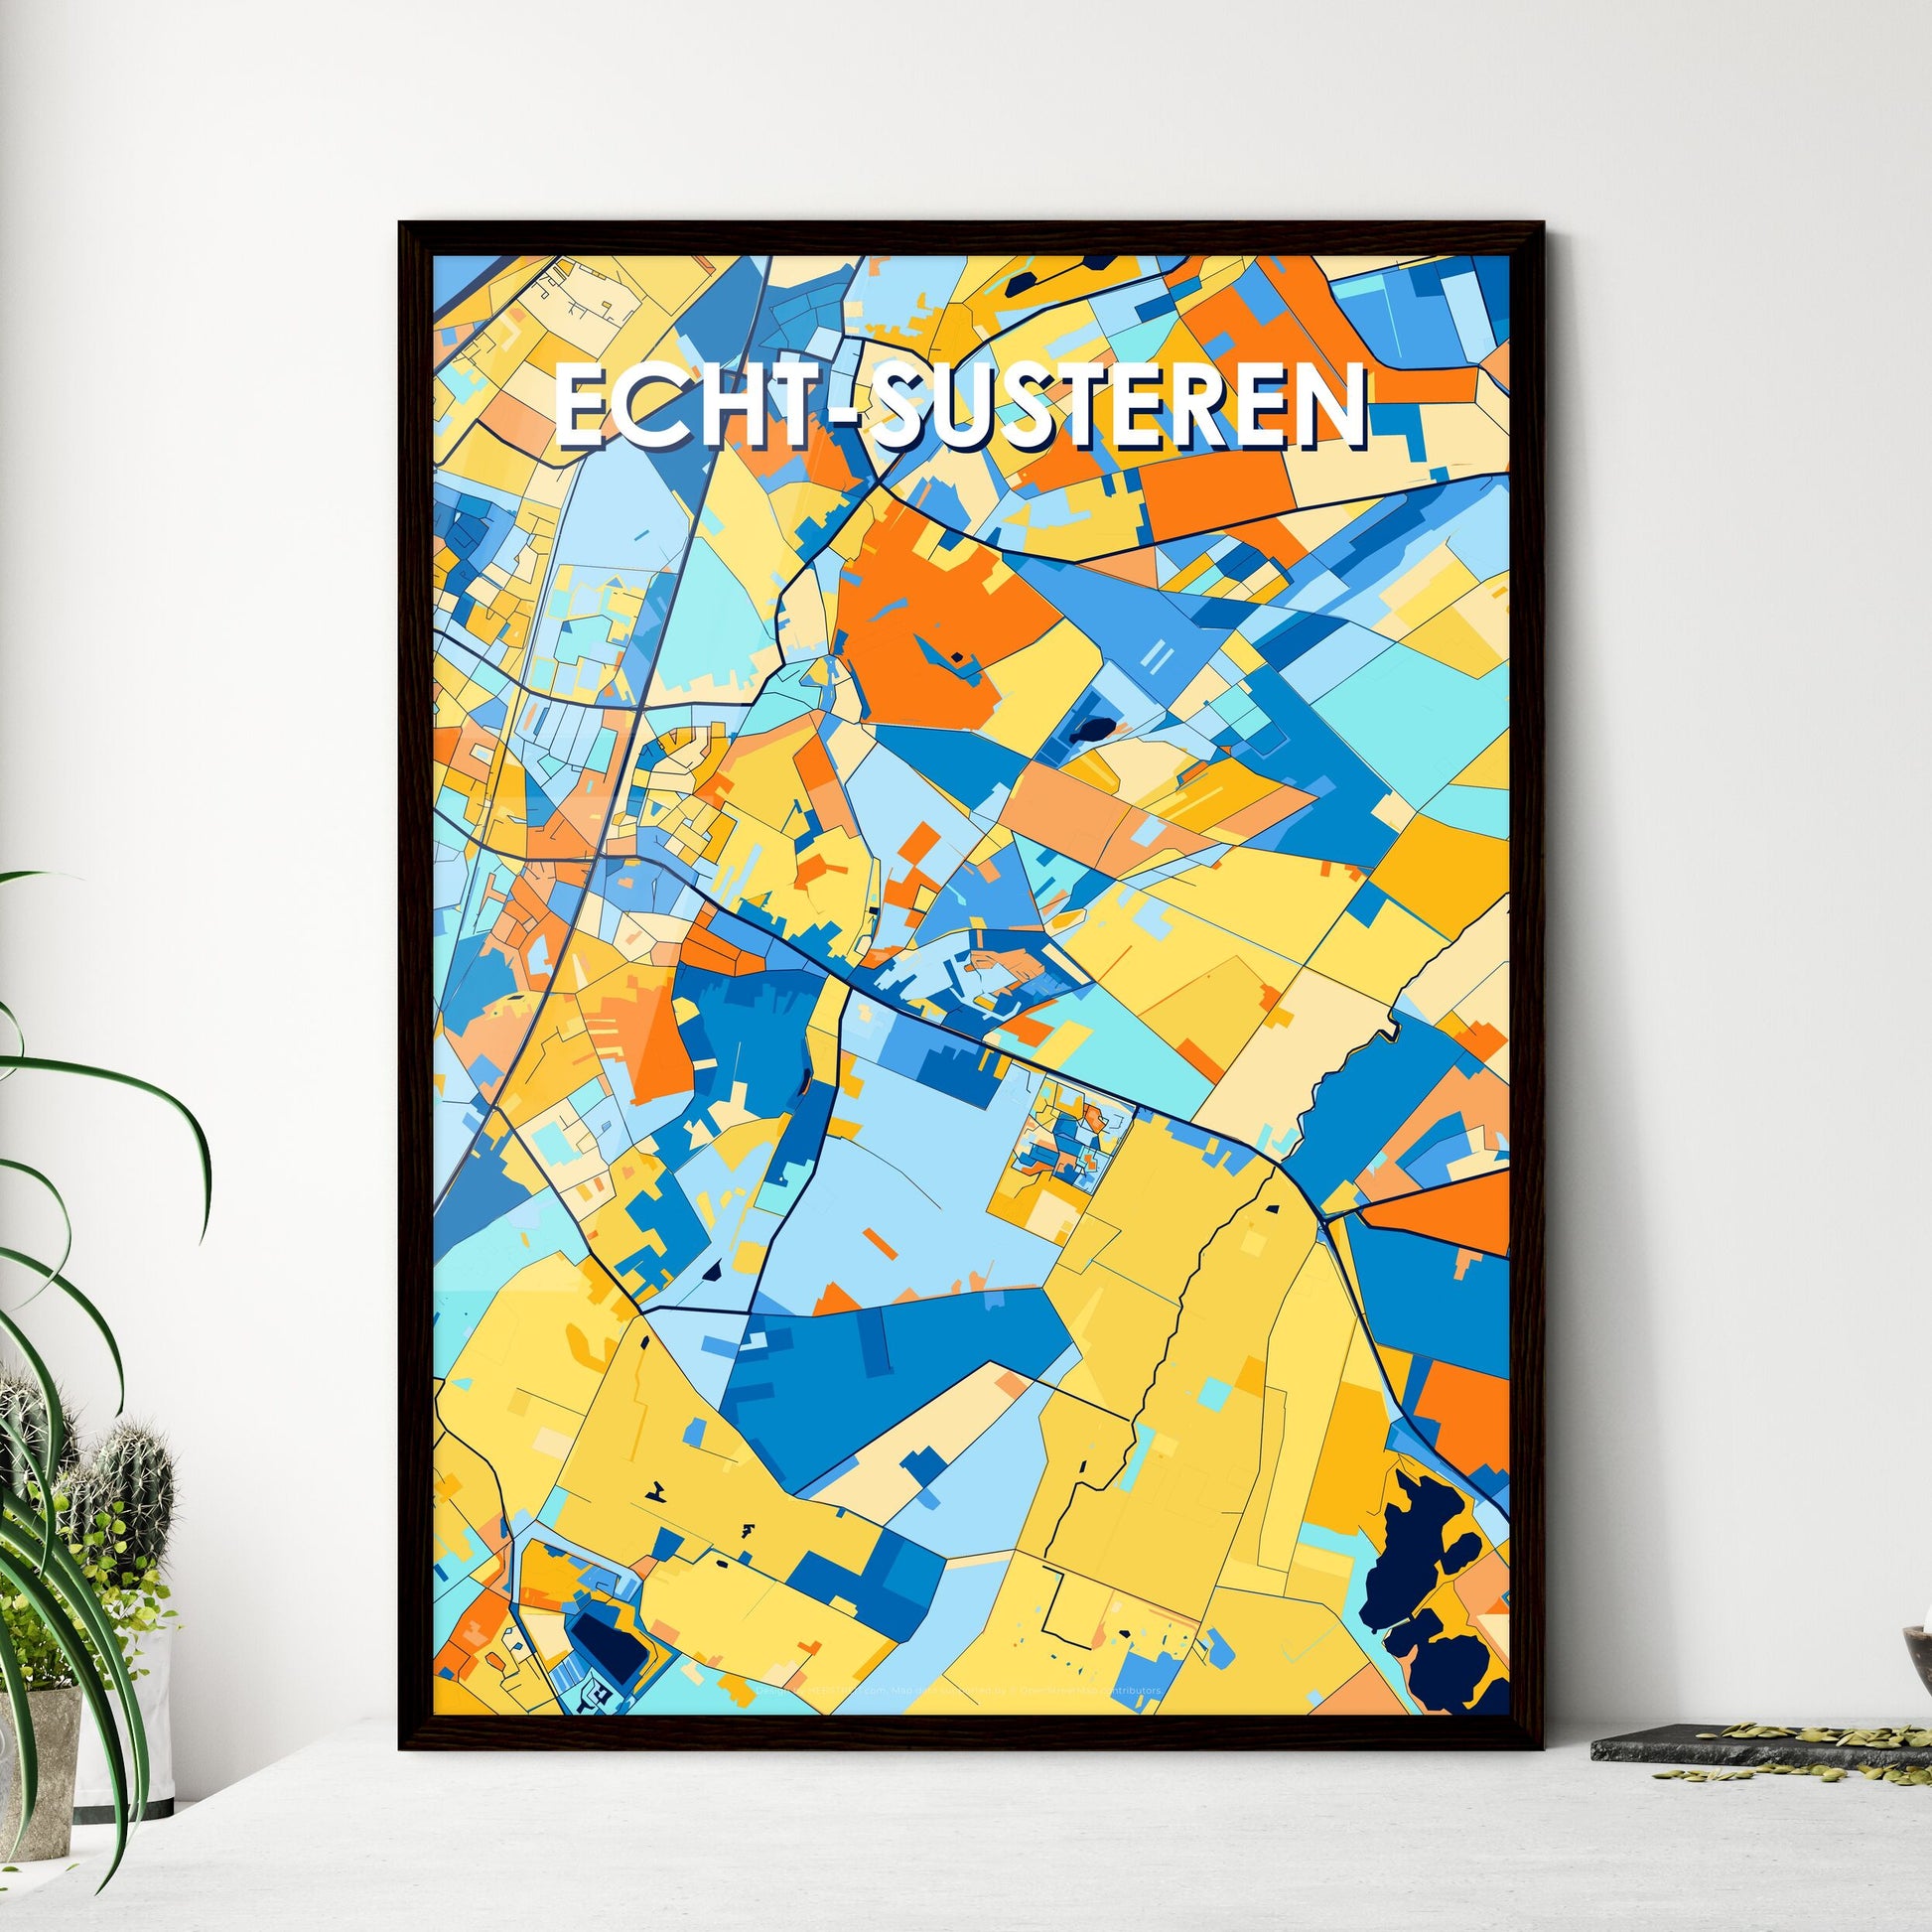 ECHT-SUSTEREN NETHERLANDS Vibrant Colorful Art Map Poster Blue Orange